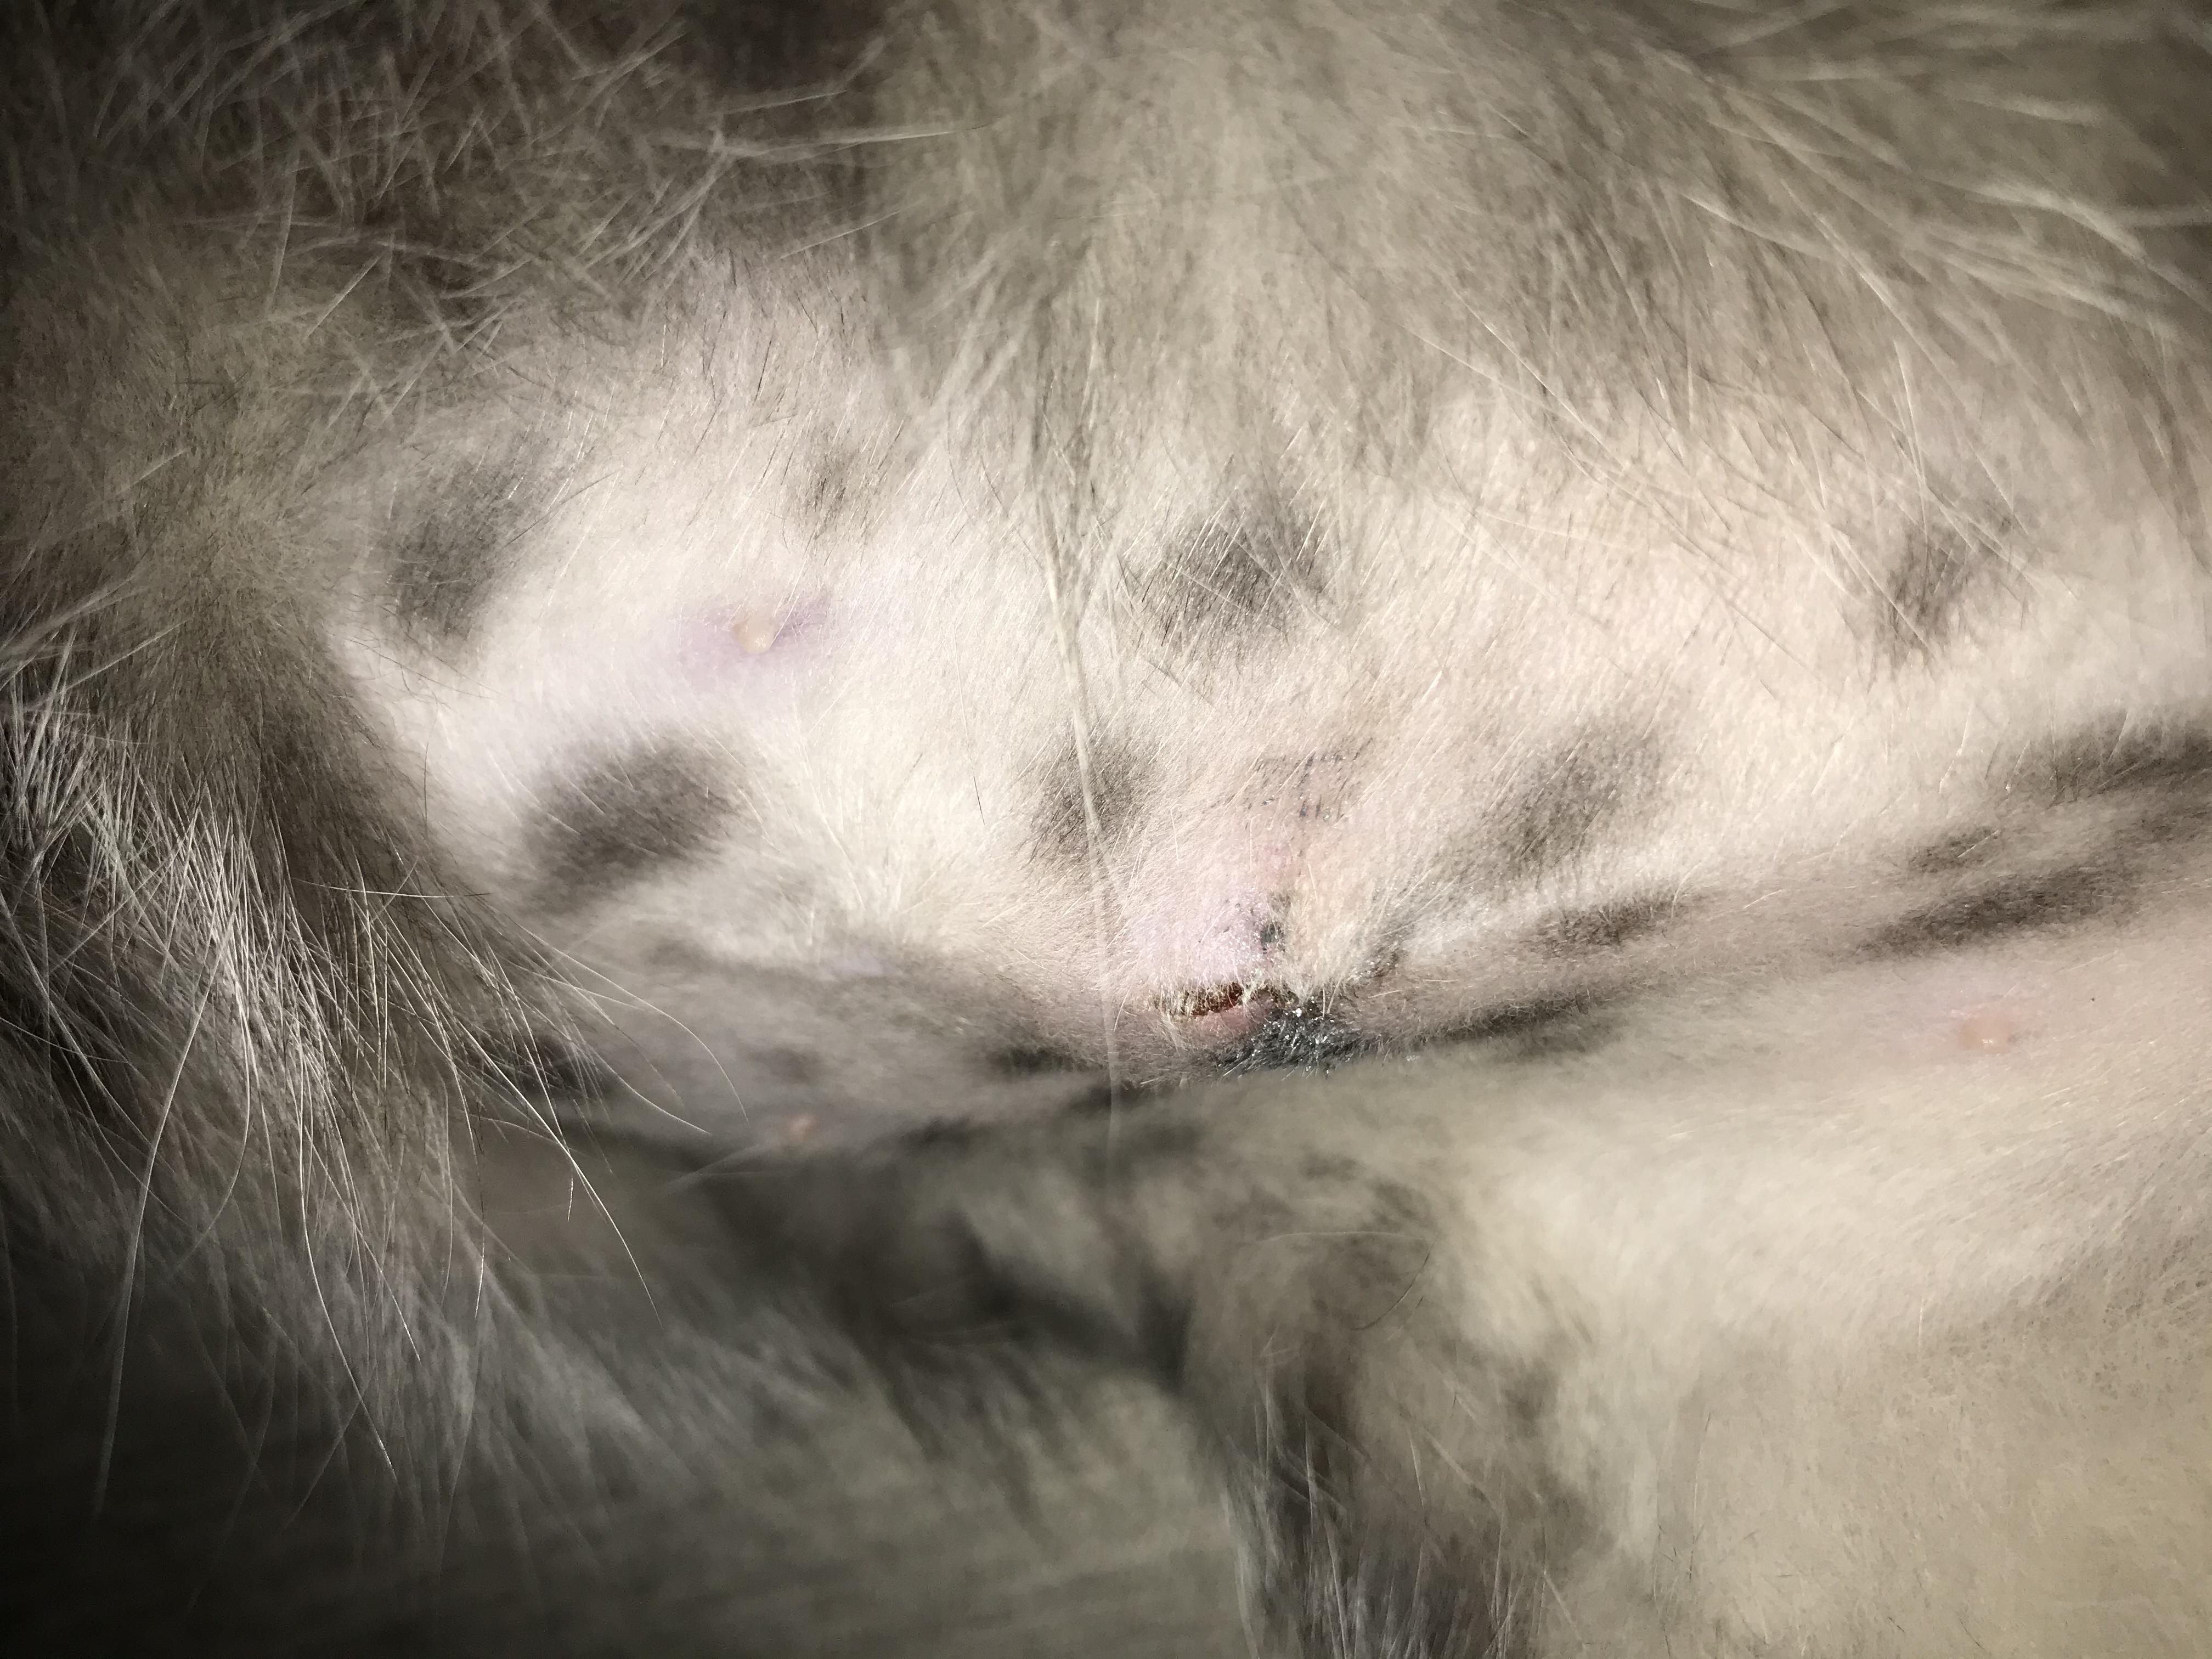 Как выглядит шов у кошки после стерилизации фото